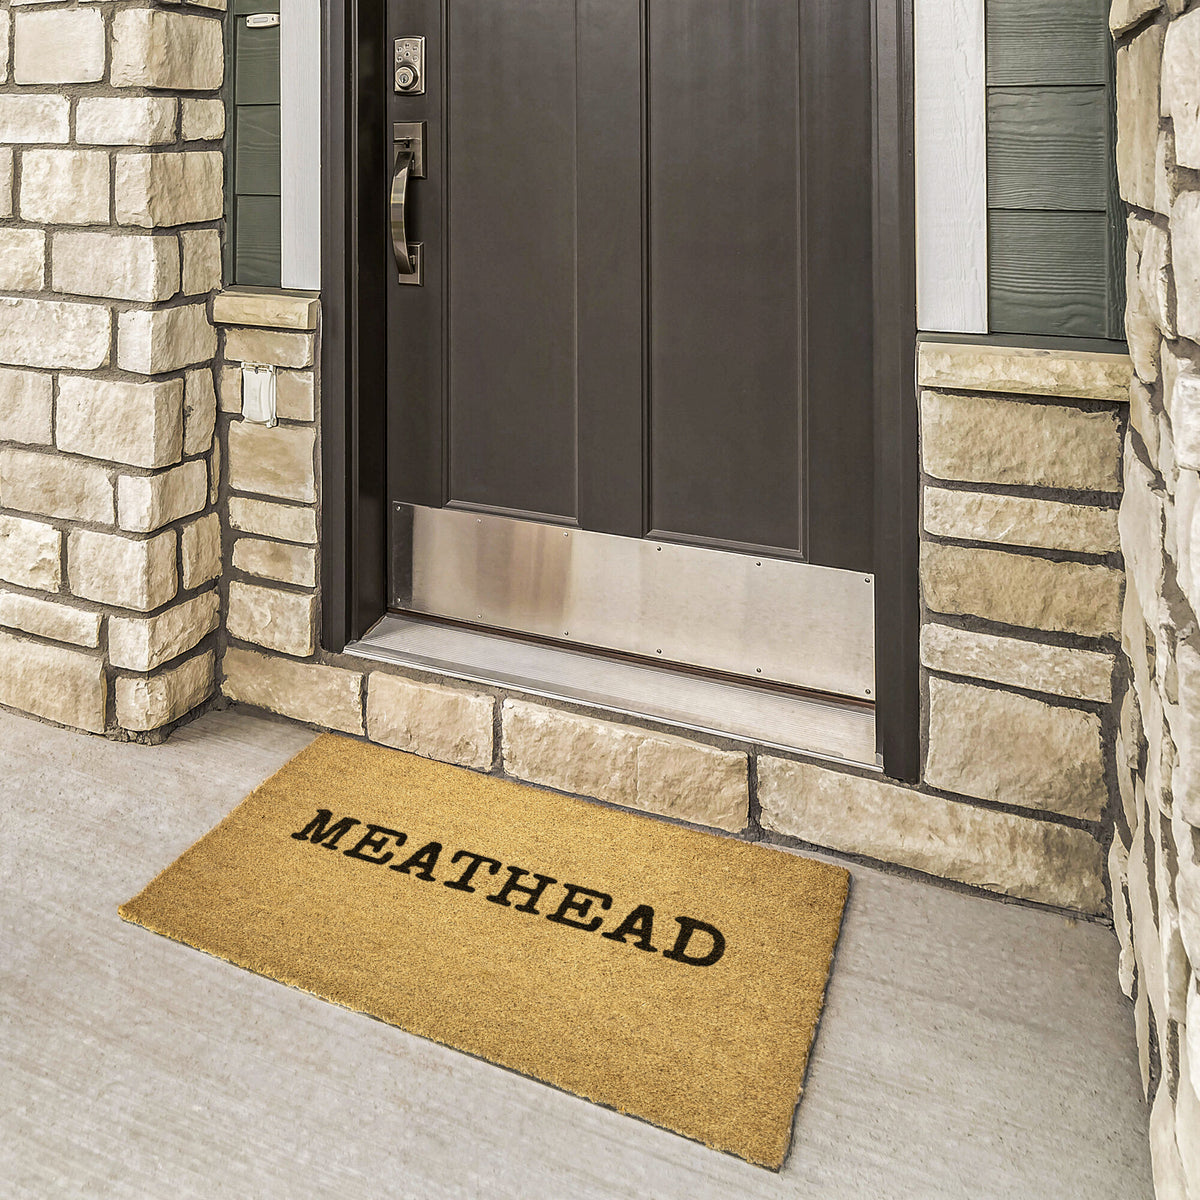 Meathead Doormat